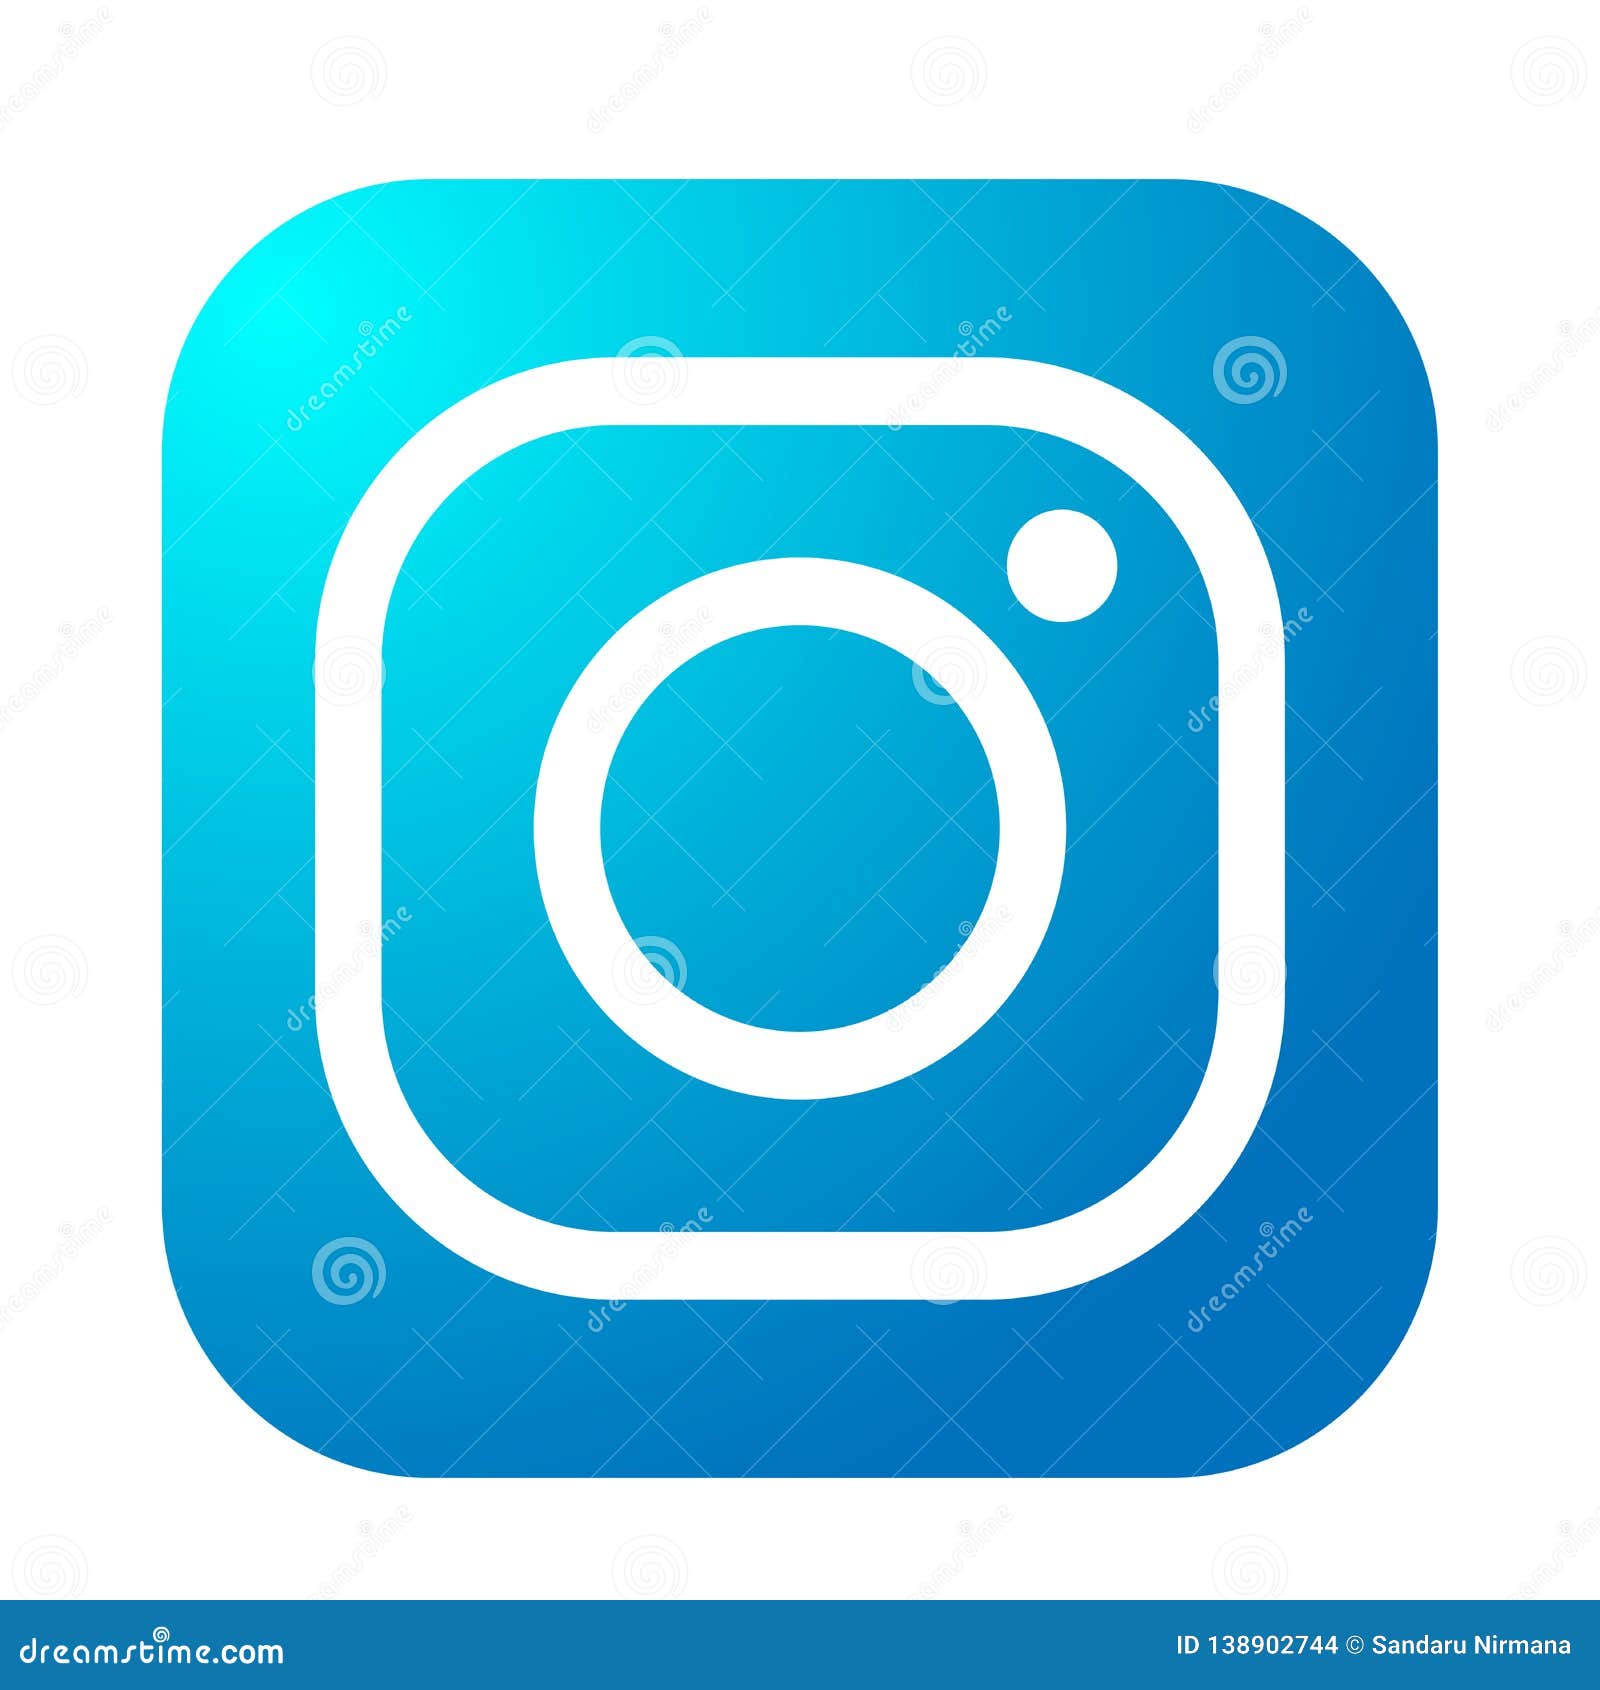 Instagram vừa cập nhật logo mới đấy! Thiết kế mới này thật sáng tạo và đầy cá tính. Cùng xem hình ảnh liên quan để khám phá logo mới của Instagram nhé!